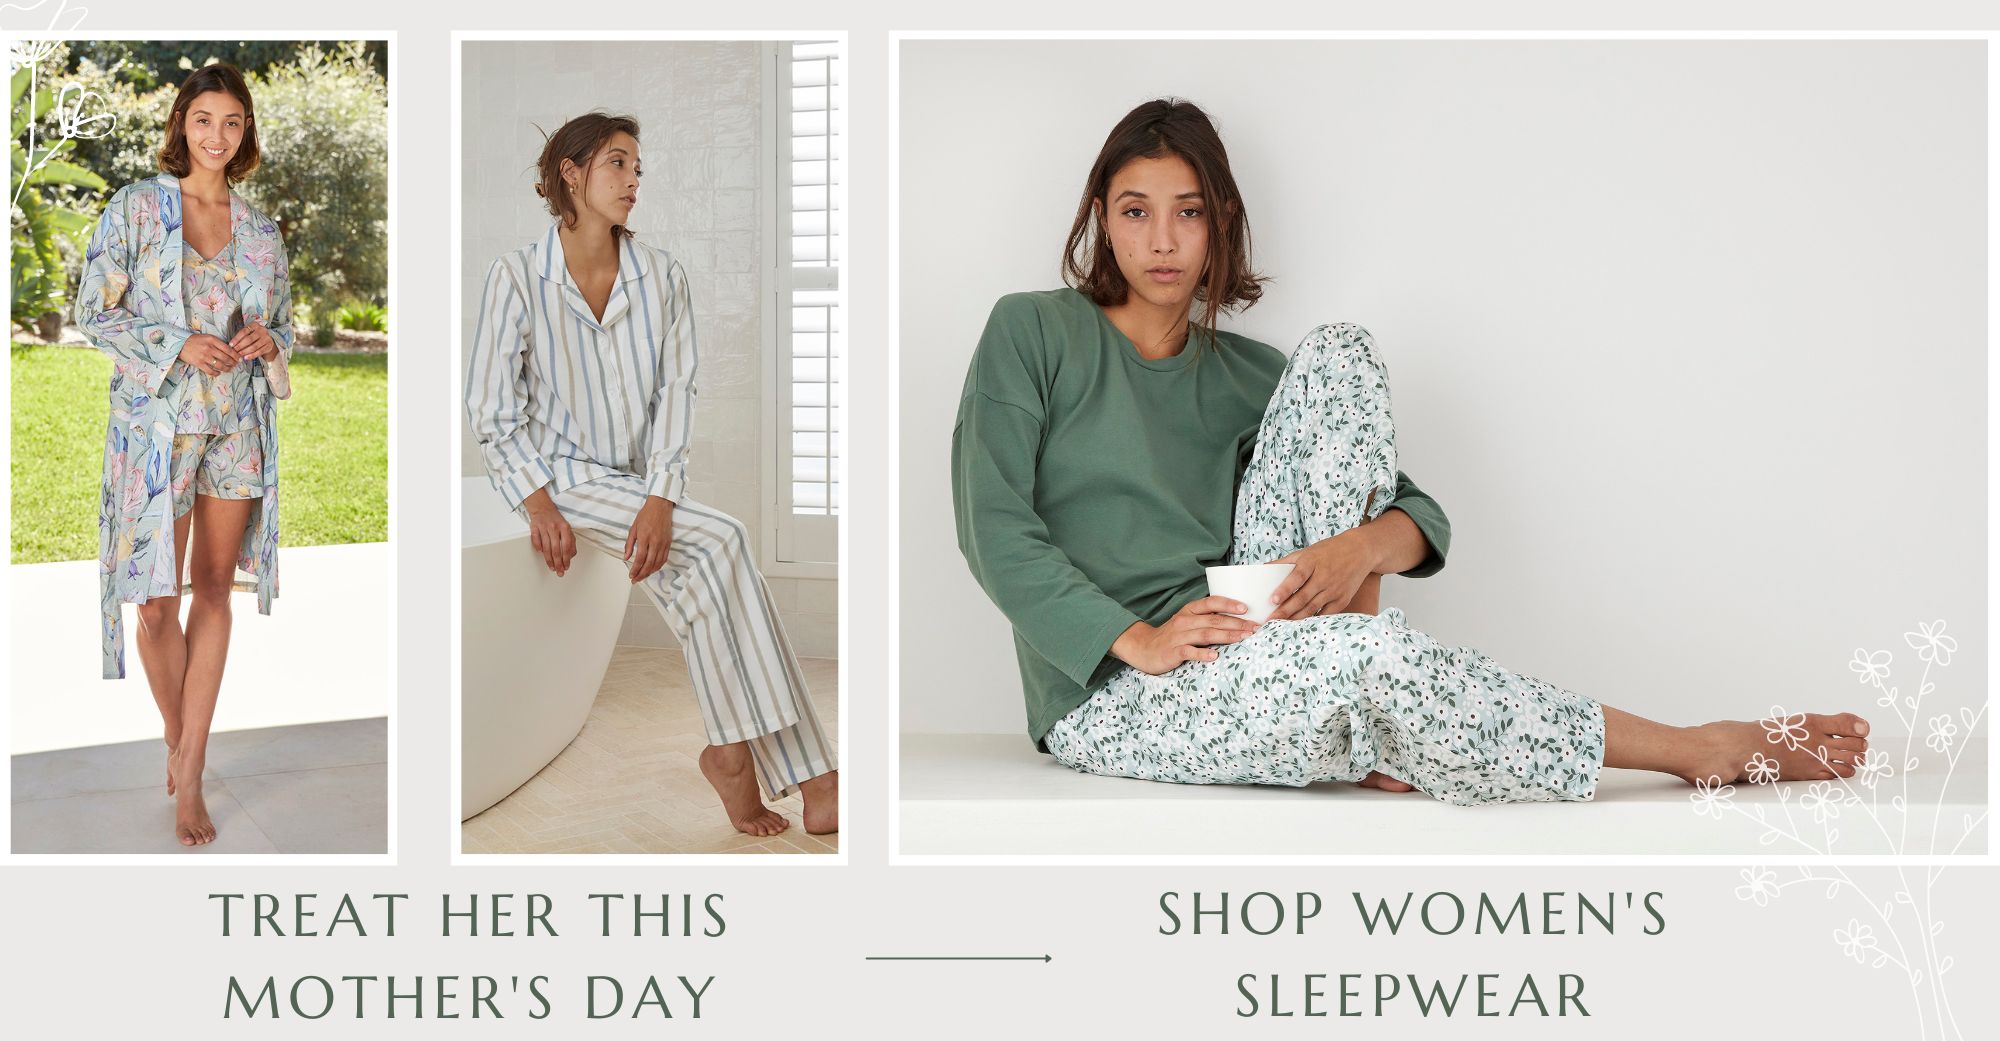 Shop Women's Sleepwear